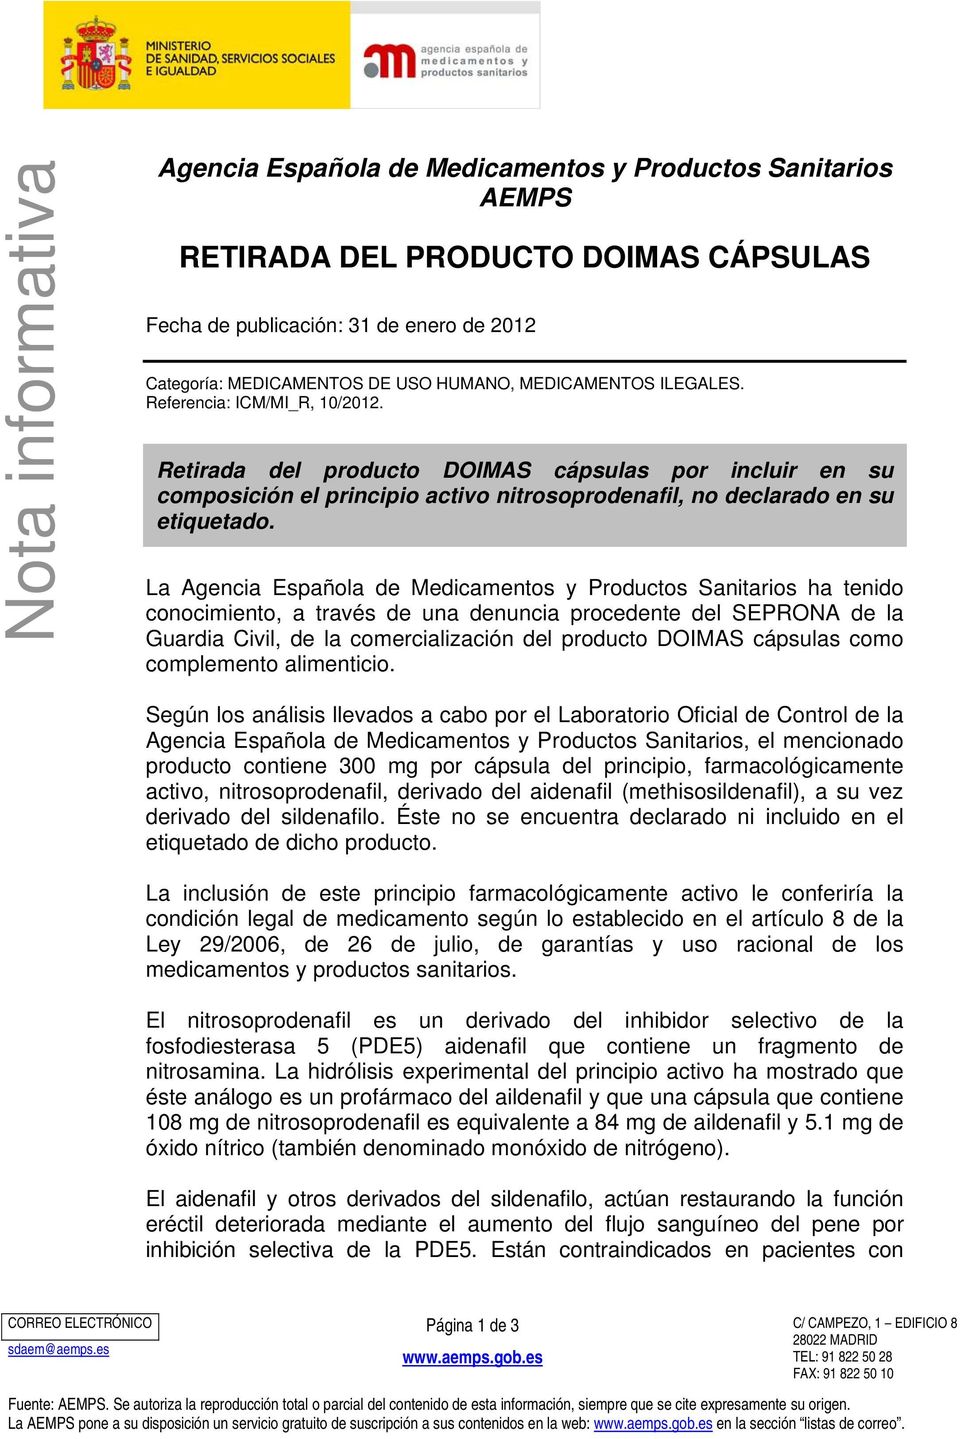 La Agencia Española de Medicamentos y Productos Sanitarios ha tenido conocimiento, a través de una denuncia procedente del SEPRONA de la Guardia Civil, de la comercialización del producto DOIMAS